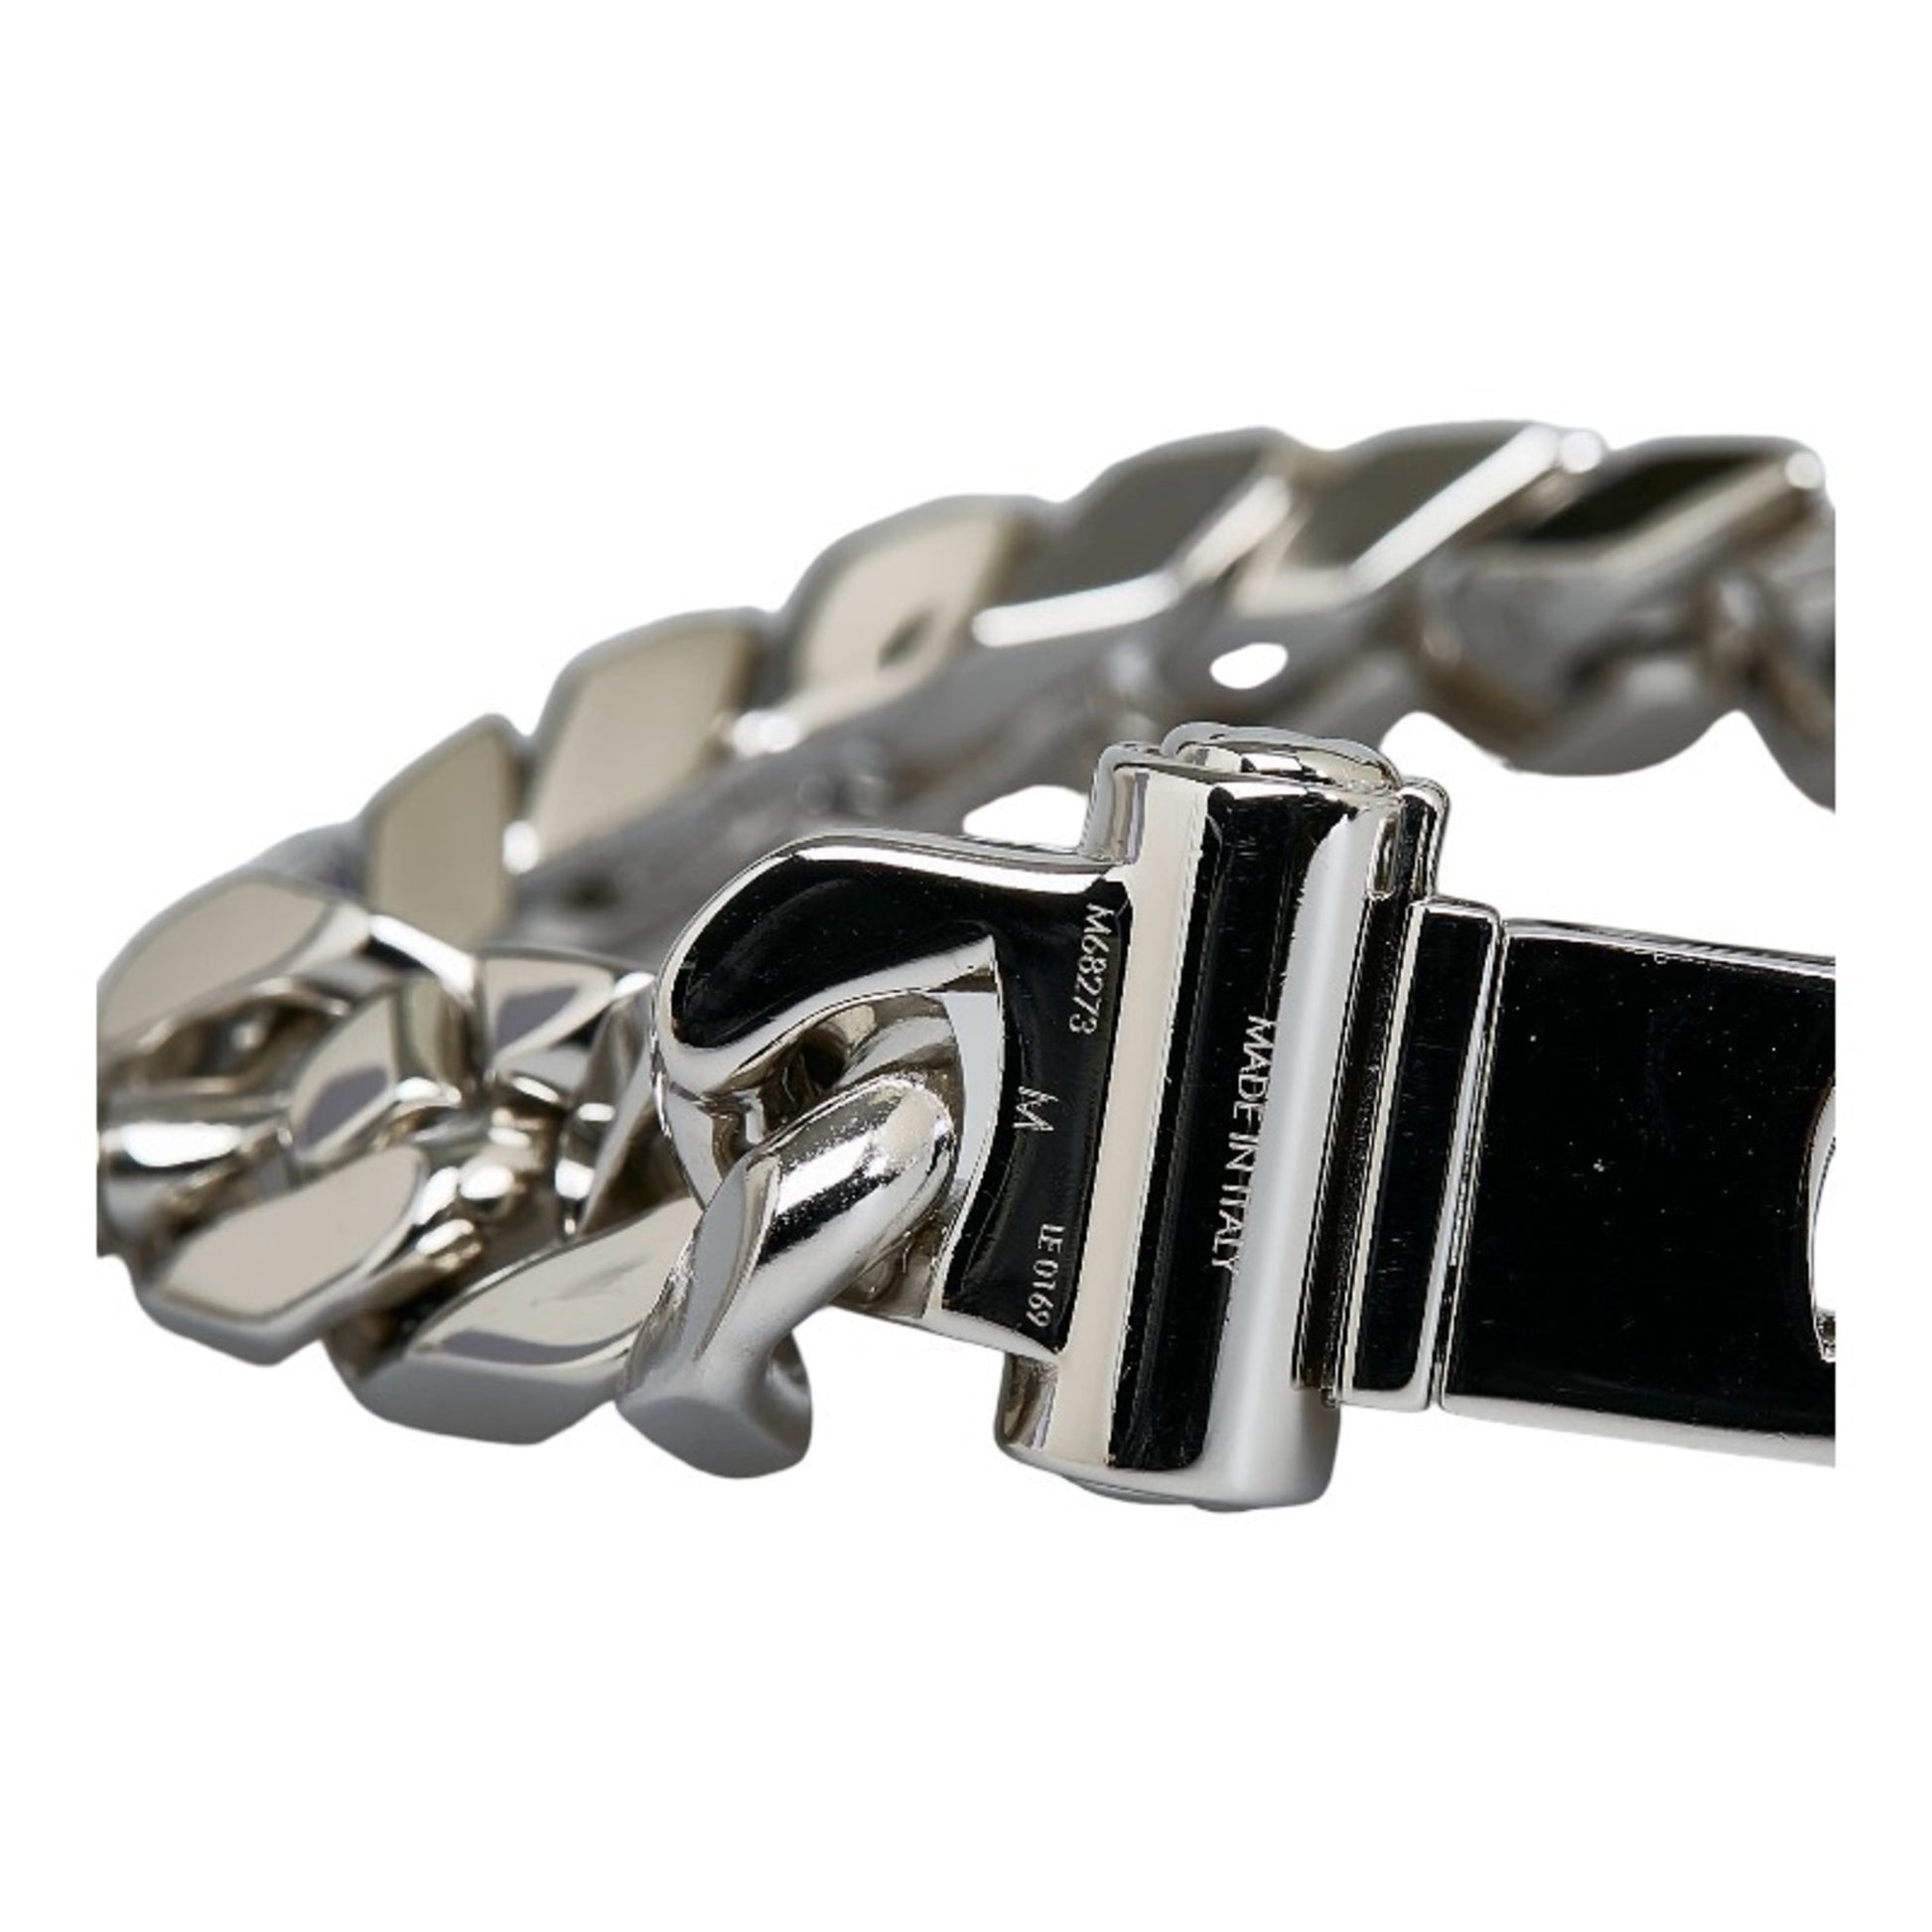 Louis Vuitton LV Chain Links Bracelet, Silver, M